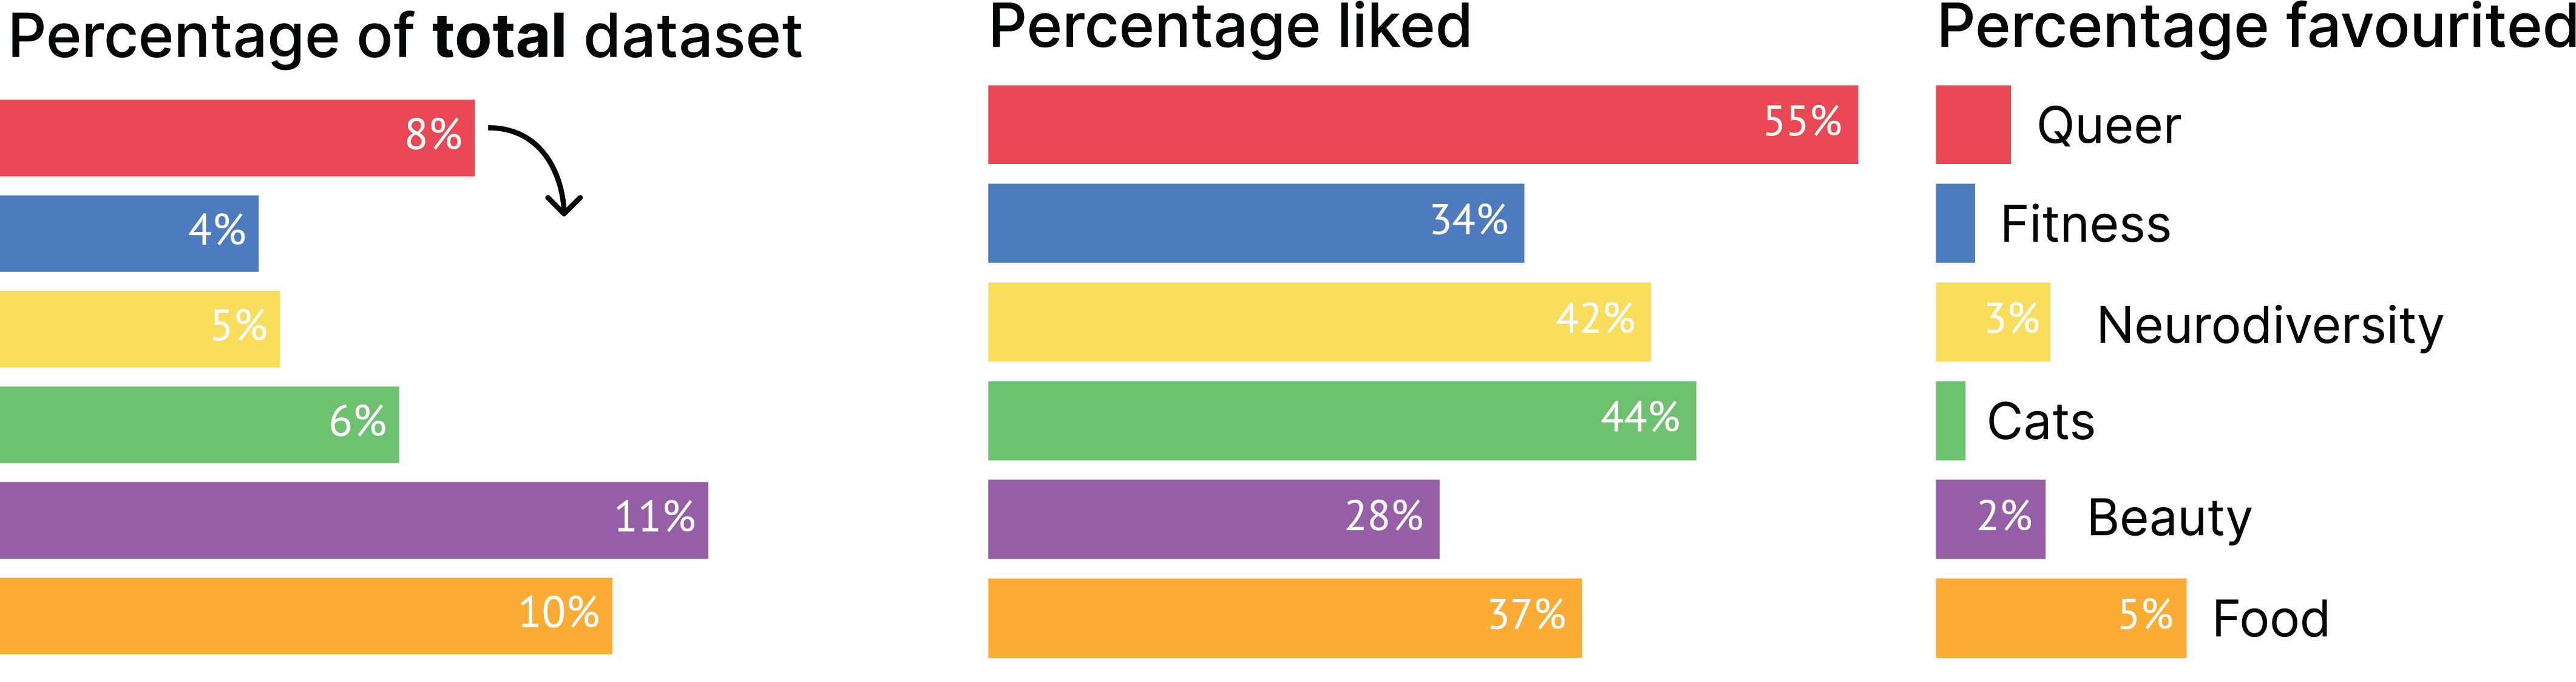 Particpant_3_percentages.png